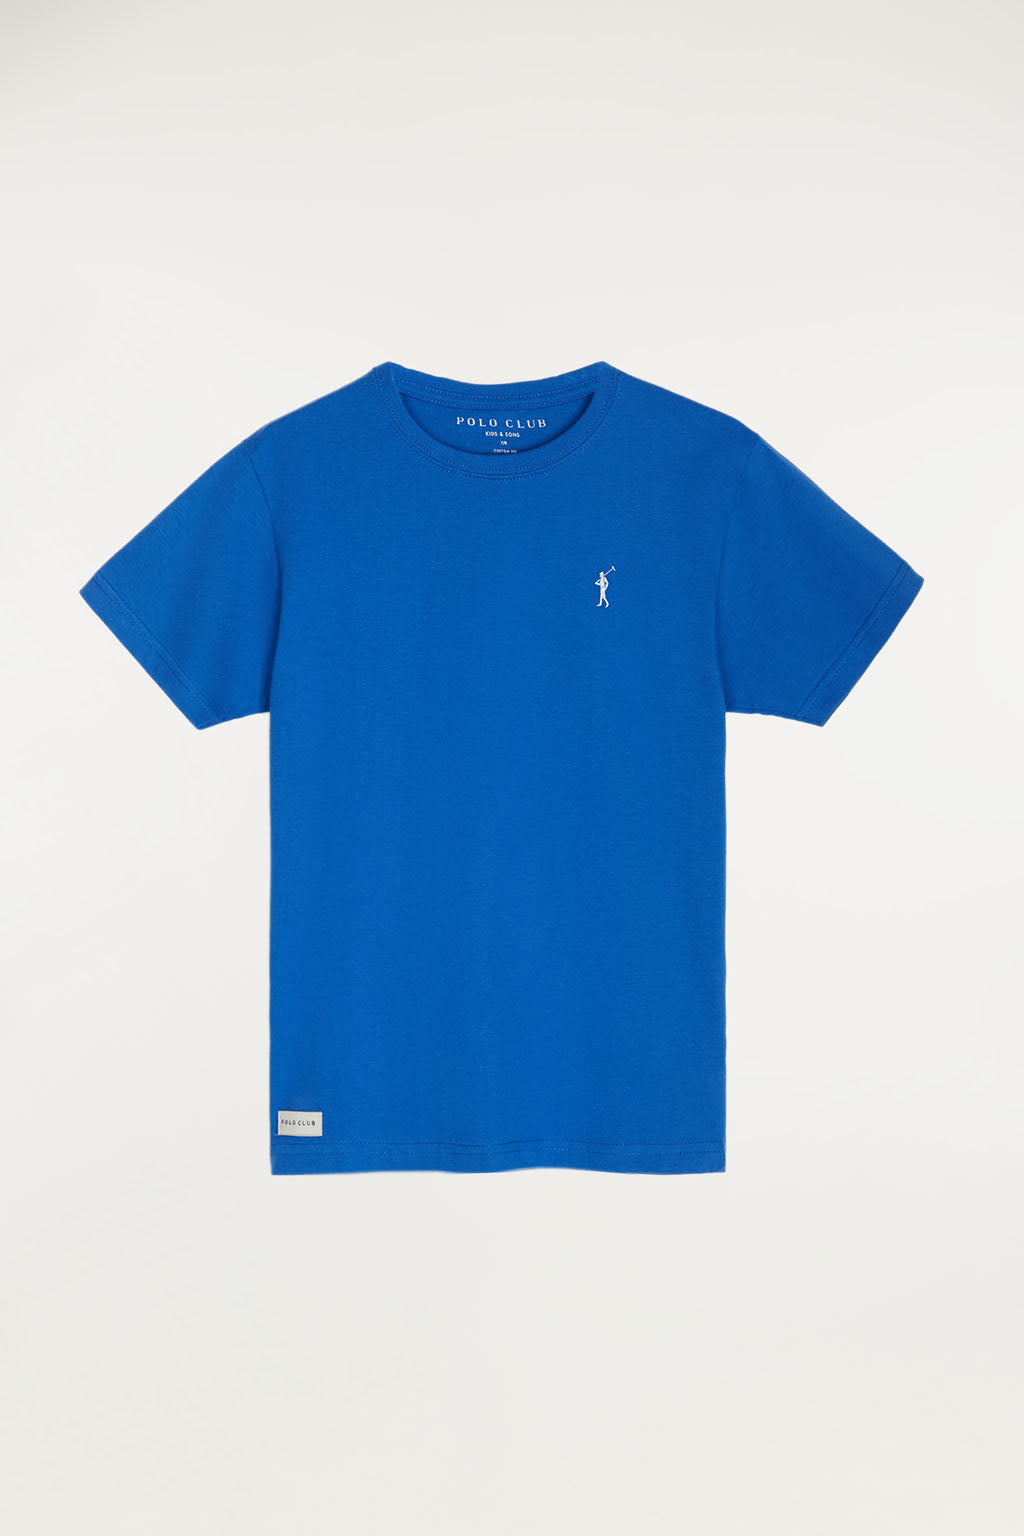 T-Shirt königsblau mit Polo – Club Europe Logo-Stickerei kleiner